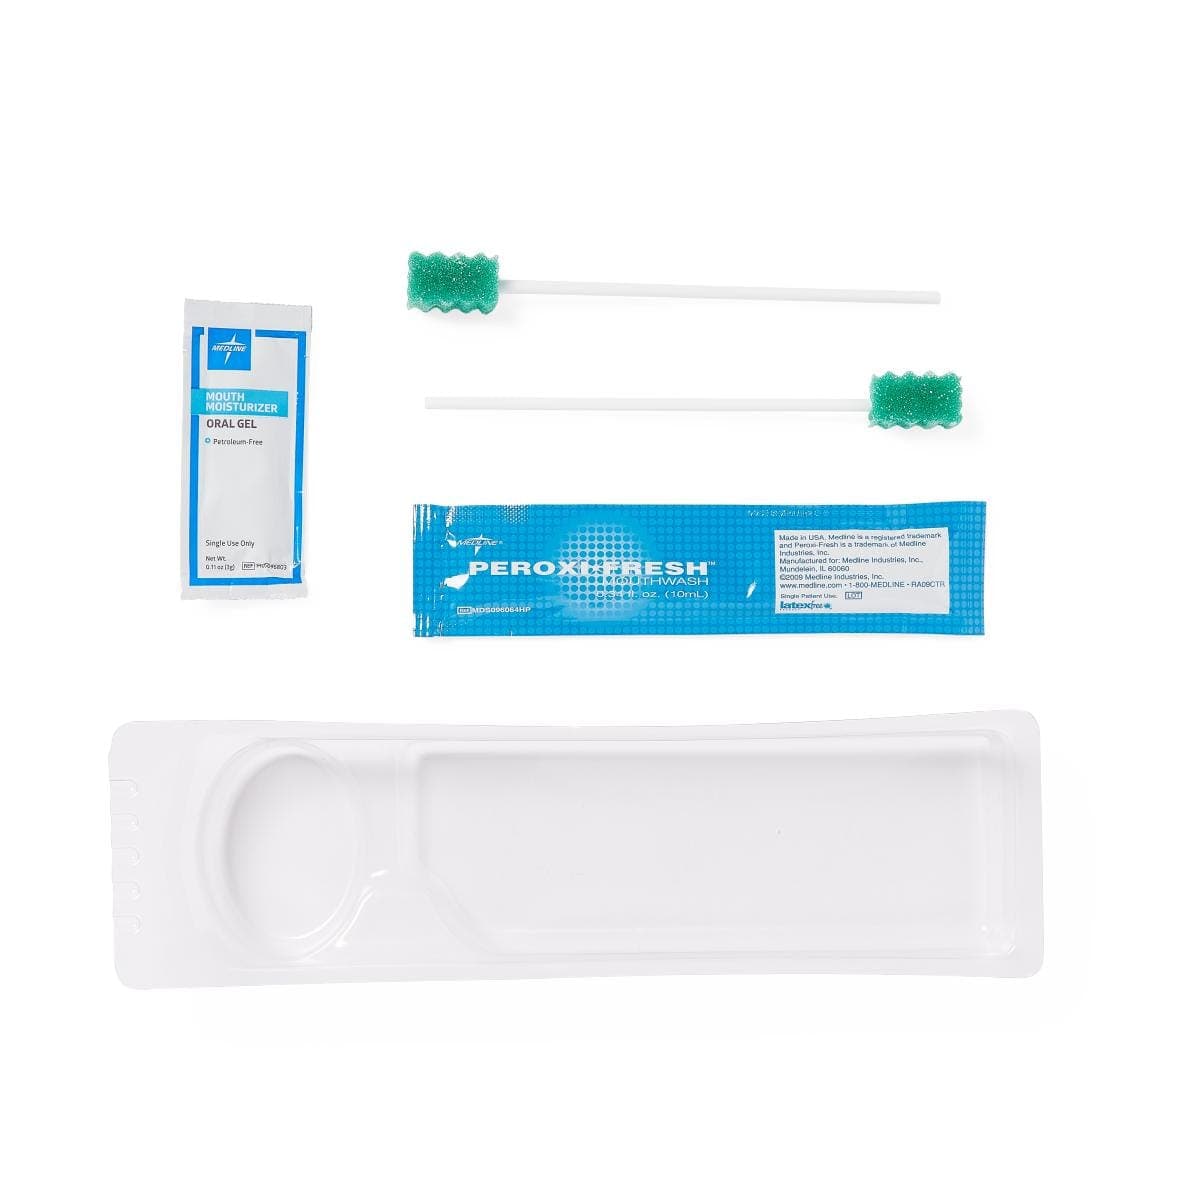 Medline Medline Standard Care Oral Care Kit with Hydrogen Peroxide